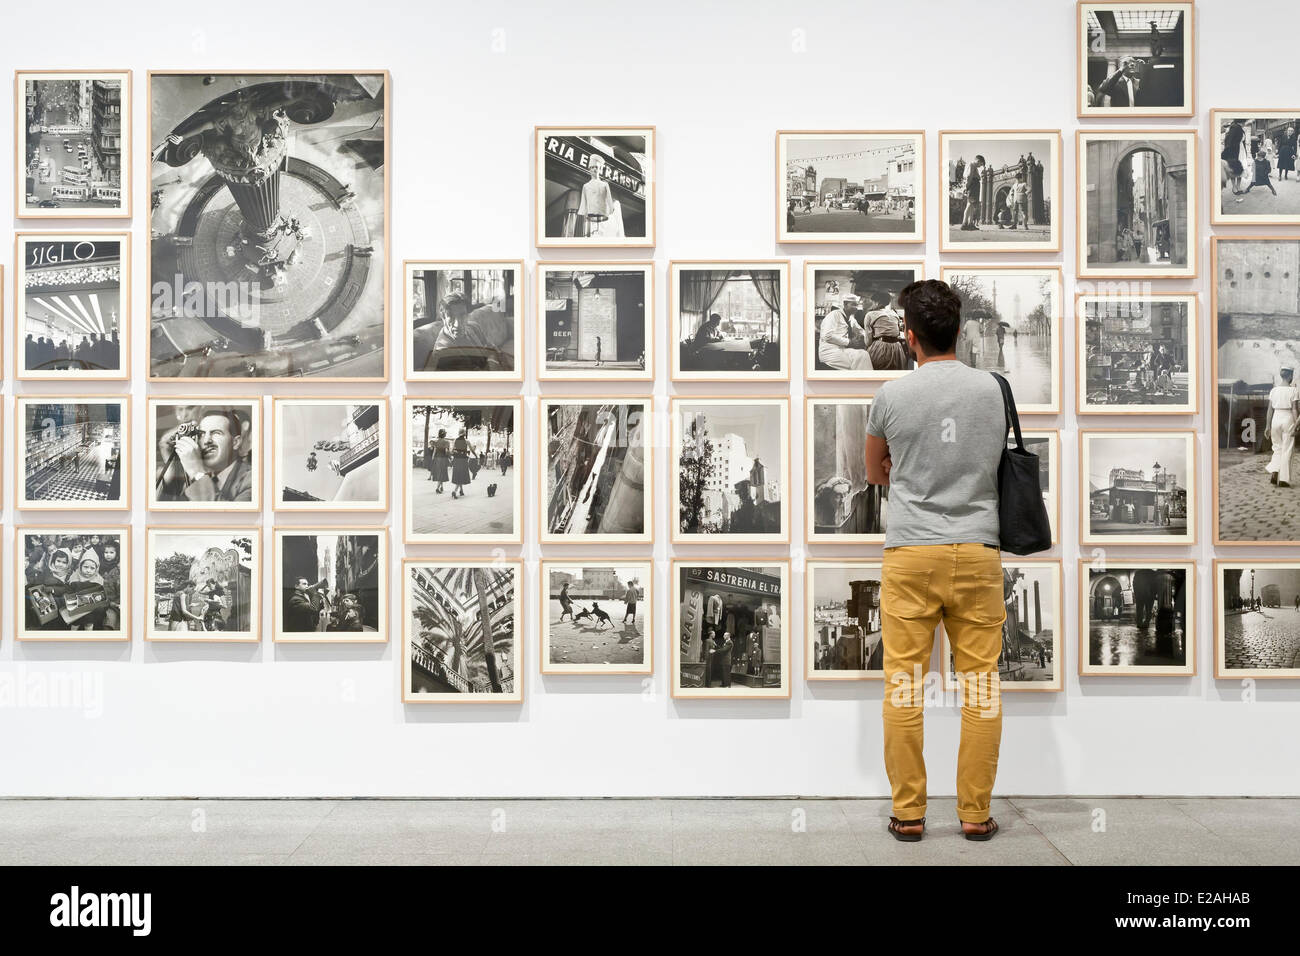 Spanien, Madrid, National Museum Kunst Zentrum Reina Sofia, umfasst den Zeitraum von 1900 bis zu präsentieren, Fotograf Katalanisch Stockfoto